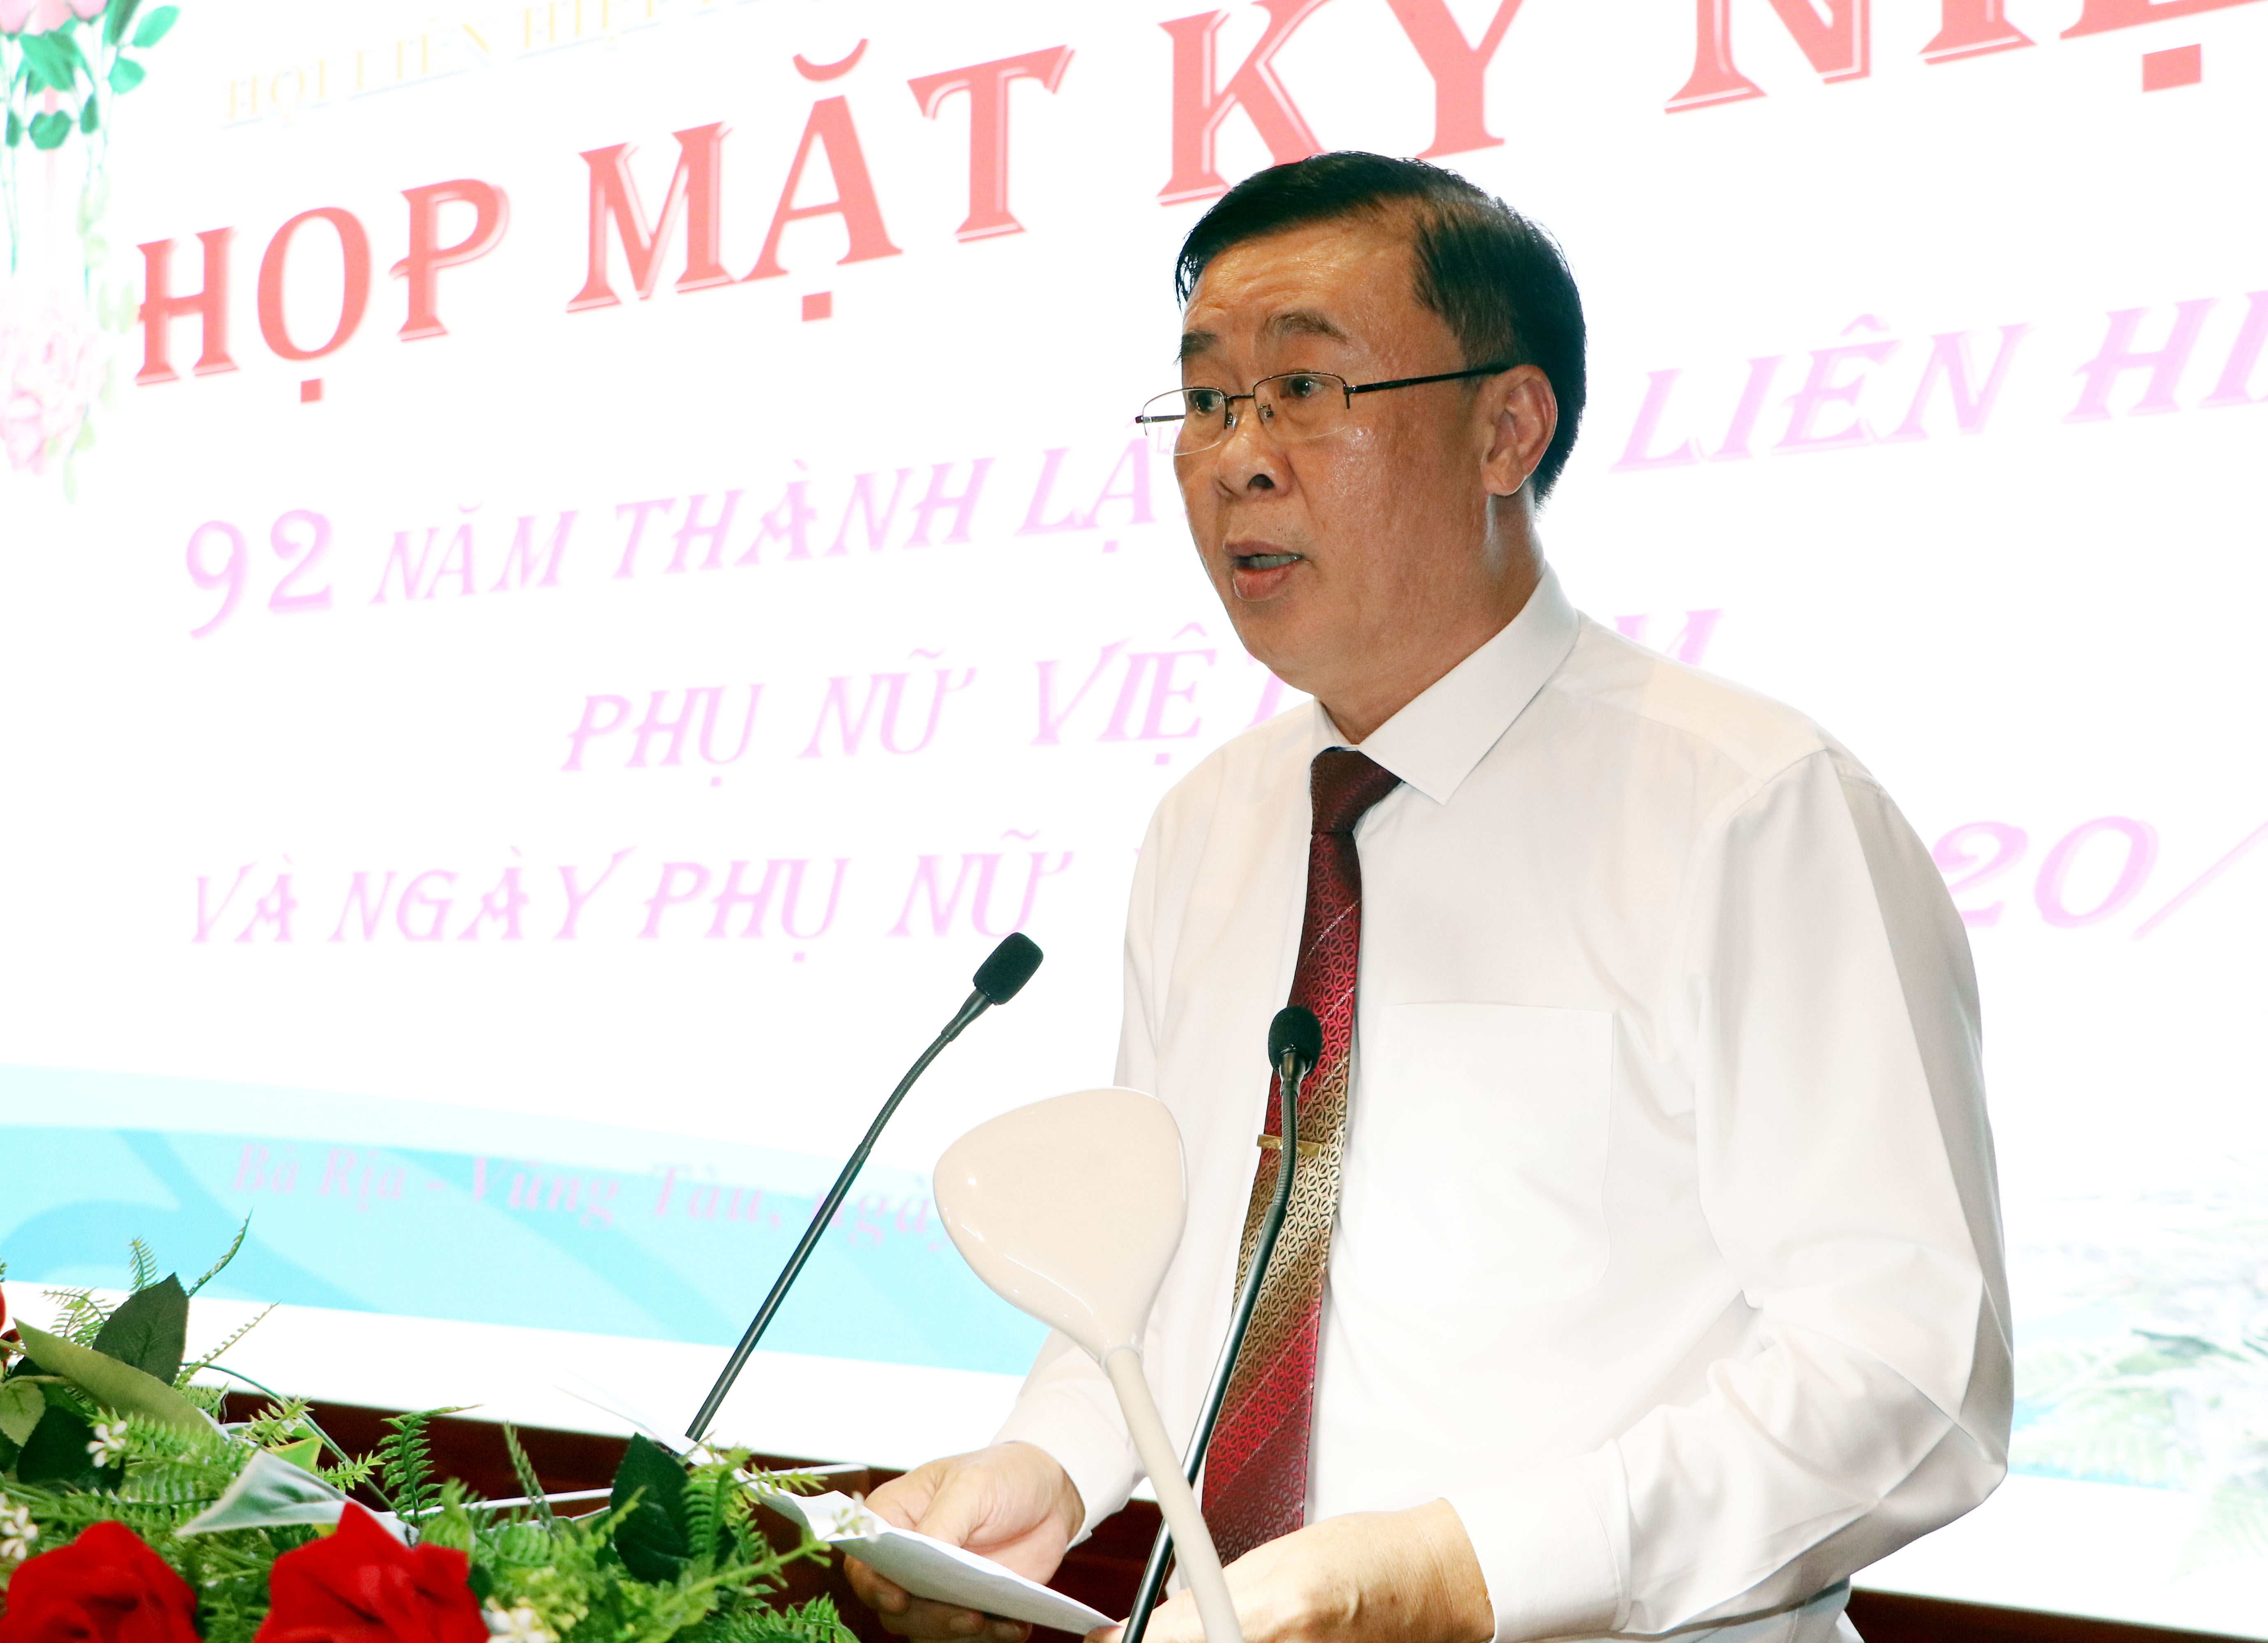 Ông Huỳnh Văn Danh, Uỷ viên Ban Thường vụ, Trường Ban Dân vận Tỉnh uỷ phát biểu tại buổi họp mặt.